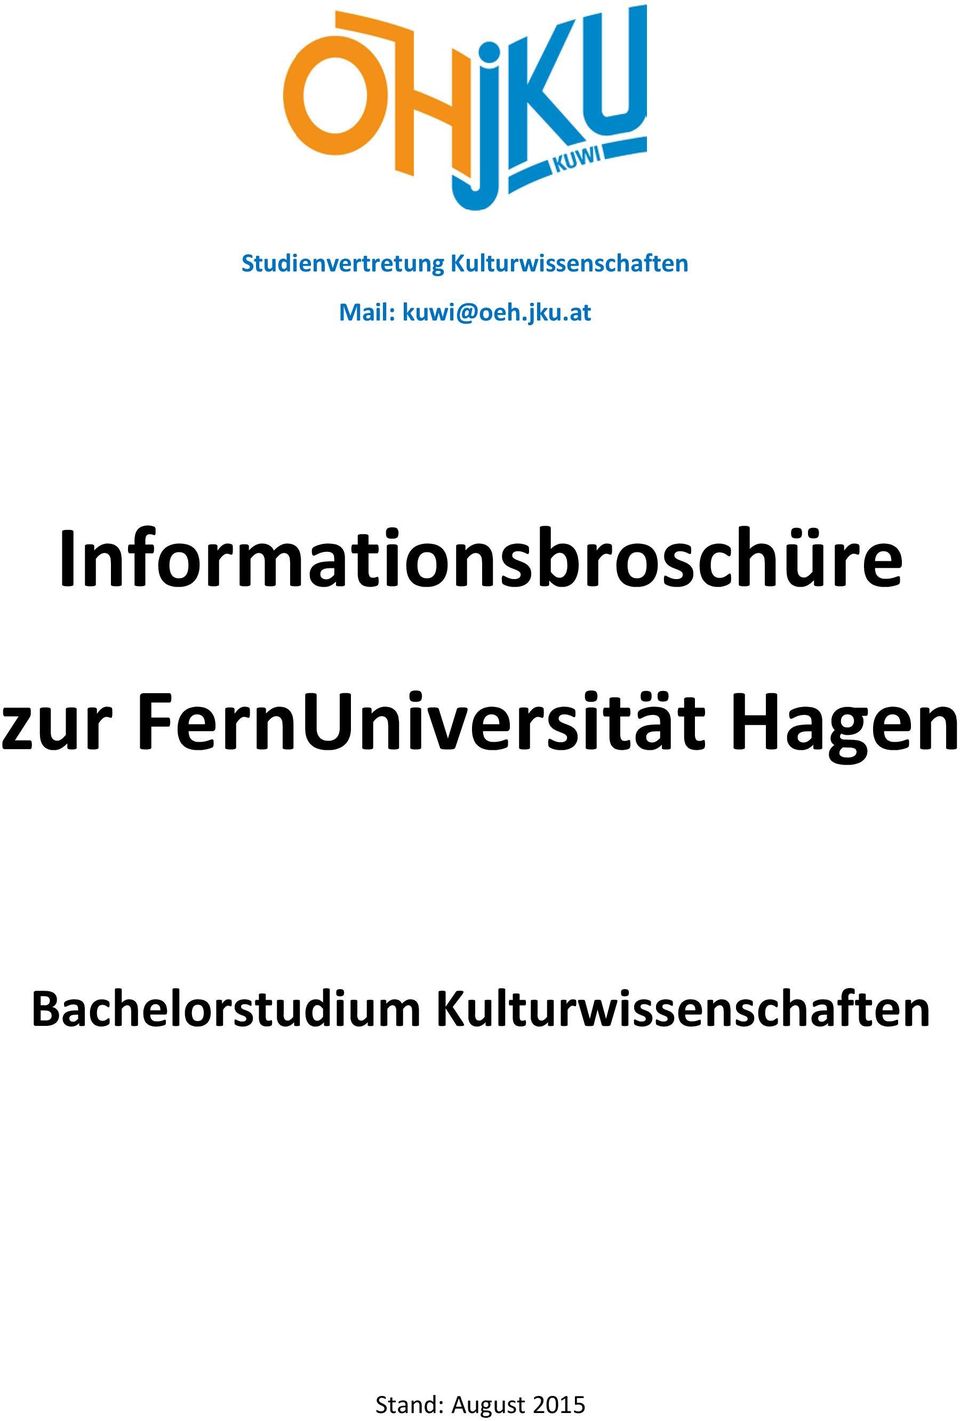 at Informationsbroschüre zur